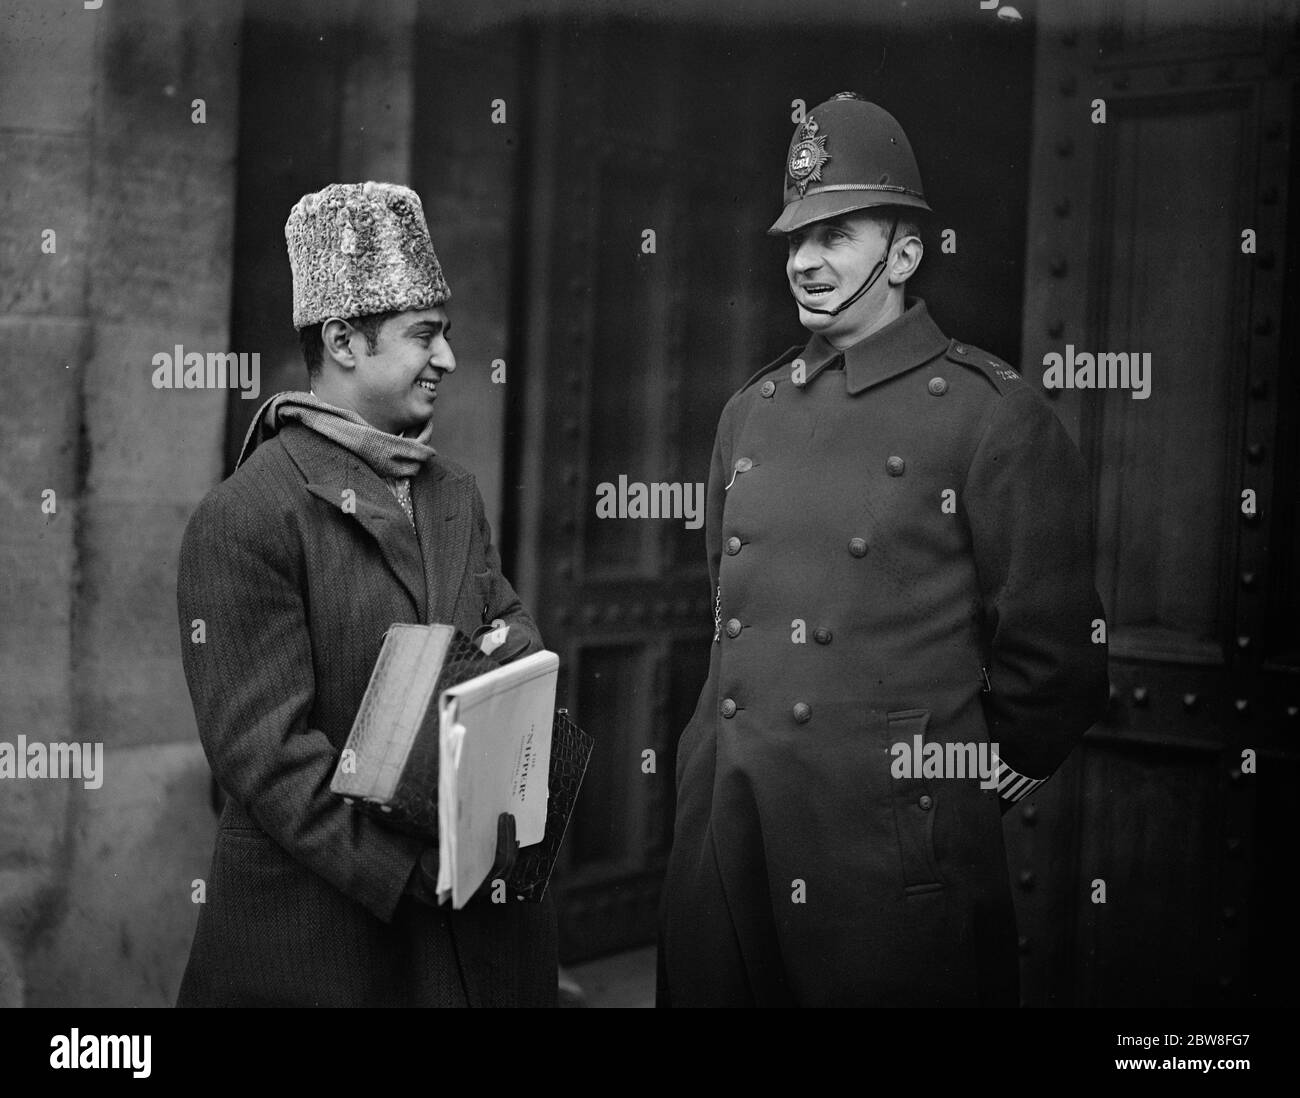 Conferenza della tavola rotonda India alla Camera dei Lord . Syed Amjad Ali , Segretario Onorario , Delegazione musulmana alla Conferenza , gode di una battuta con un poliziotto all'arrivo . 23 novembre 1932 Foto Stock